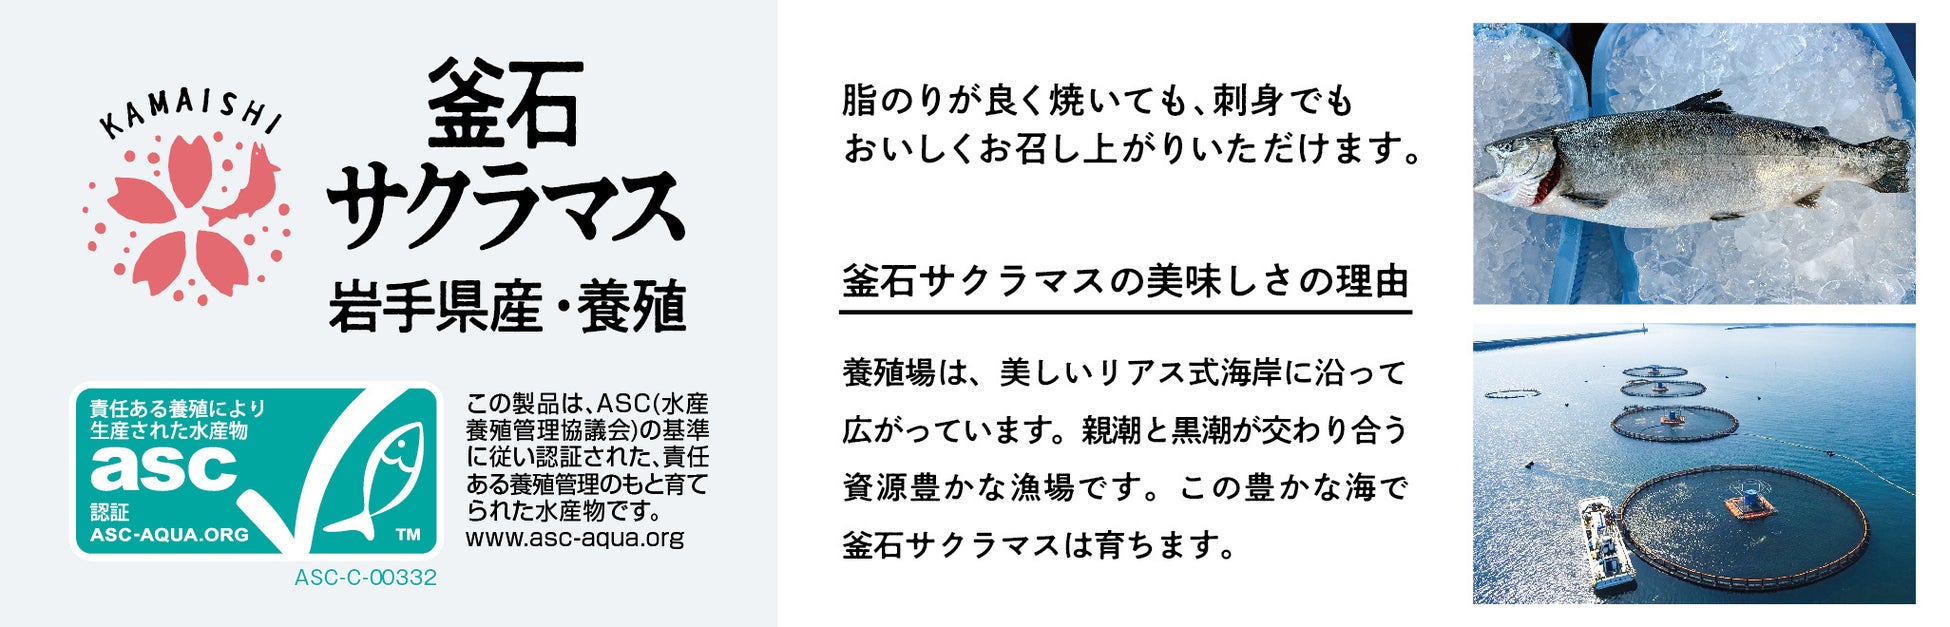 【松屋】新登場でレギュラーメニューに「スタミナ豚バラ炒め丼・定食」新発売